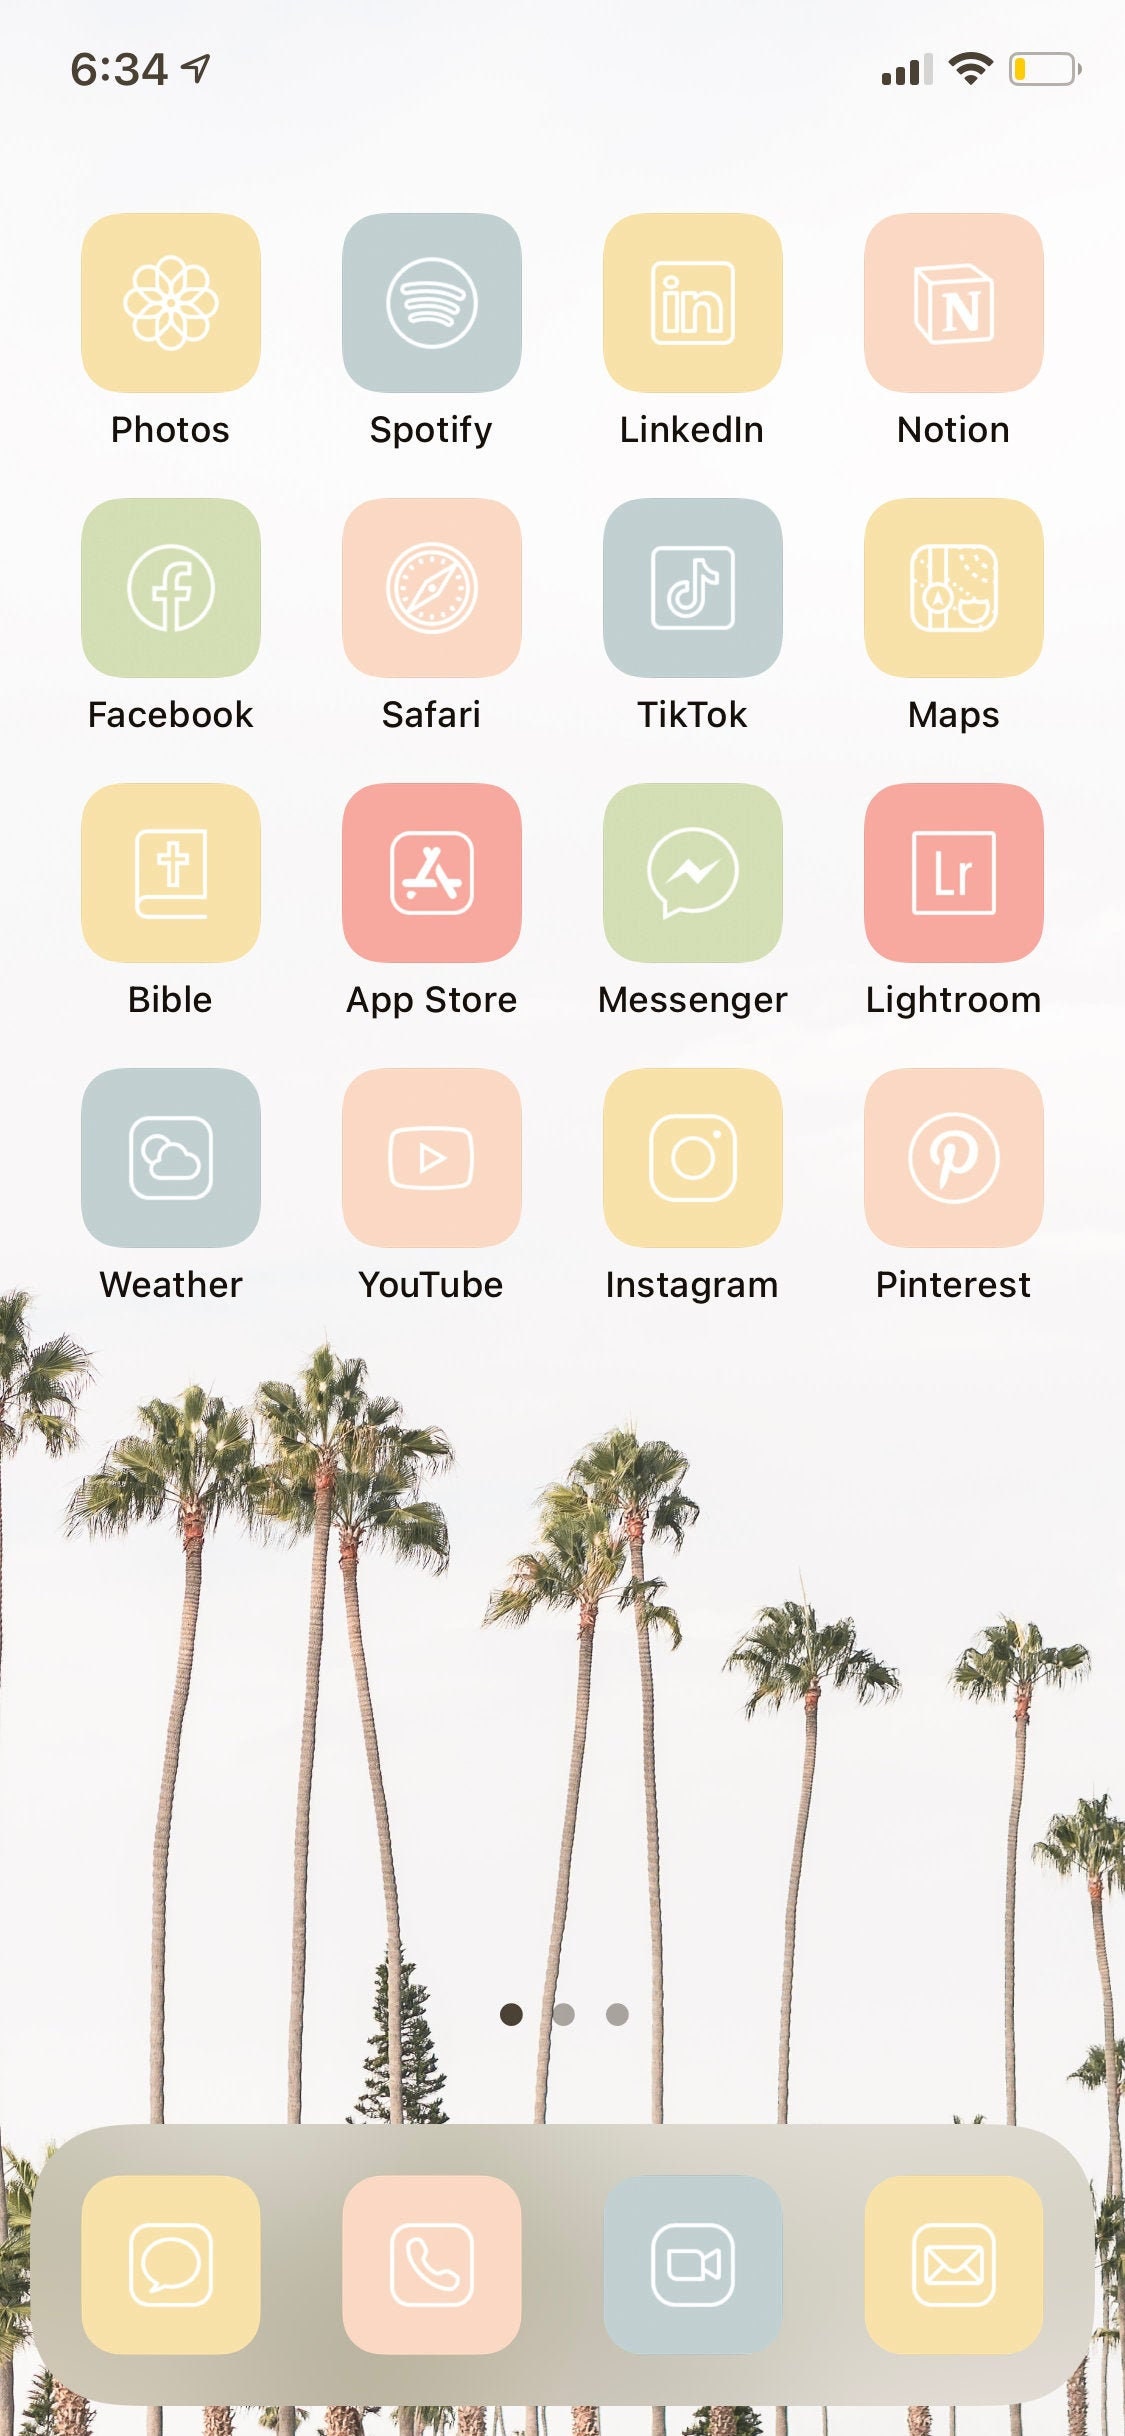 Biểu tượng ứng dụng iOS 14 với nhiều kiểu dáng và màu sắc khác nhau, cho phép bạn tùy chỉnh và cập nhật bộ sưu tập của mình theo ý muốn. Hãy nhấn vào hình ảnh liên quan để biết thêm chi tiết và cách để tải về, tùy chỉnh biểu tượng ứng dụng trên iPhone của bạn.